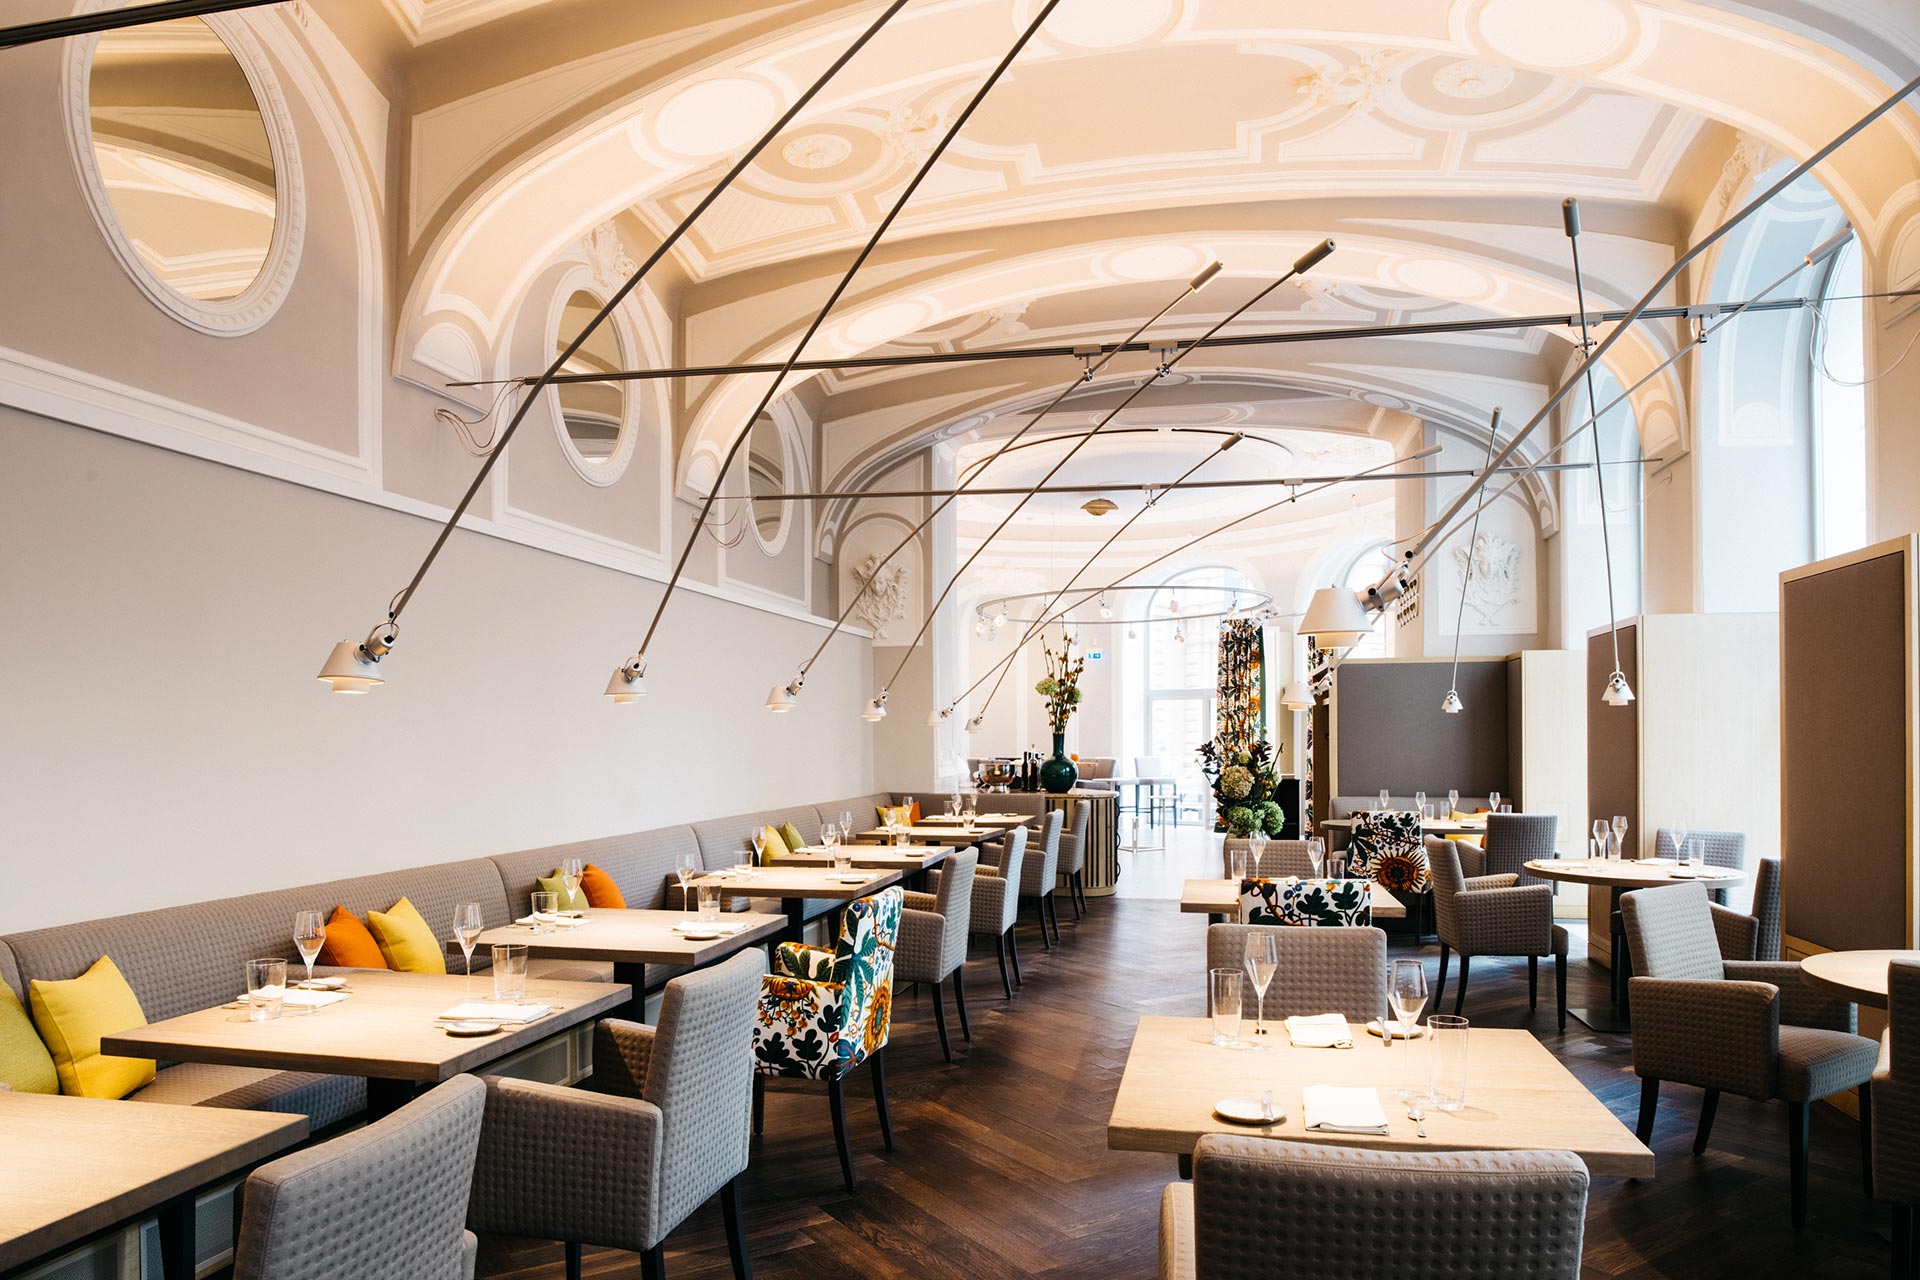 2019 - TIAN Restaurant, A-1010 Wien